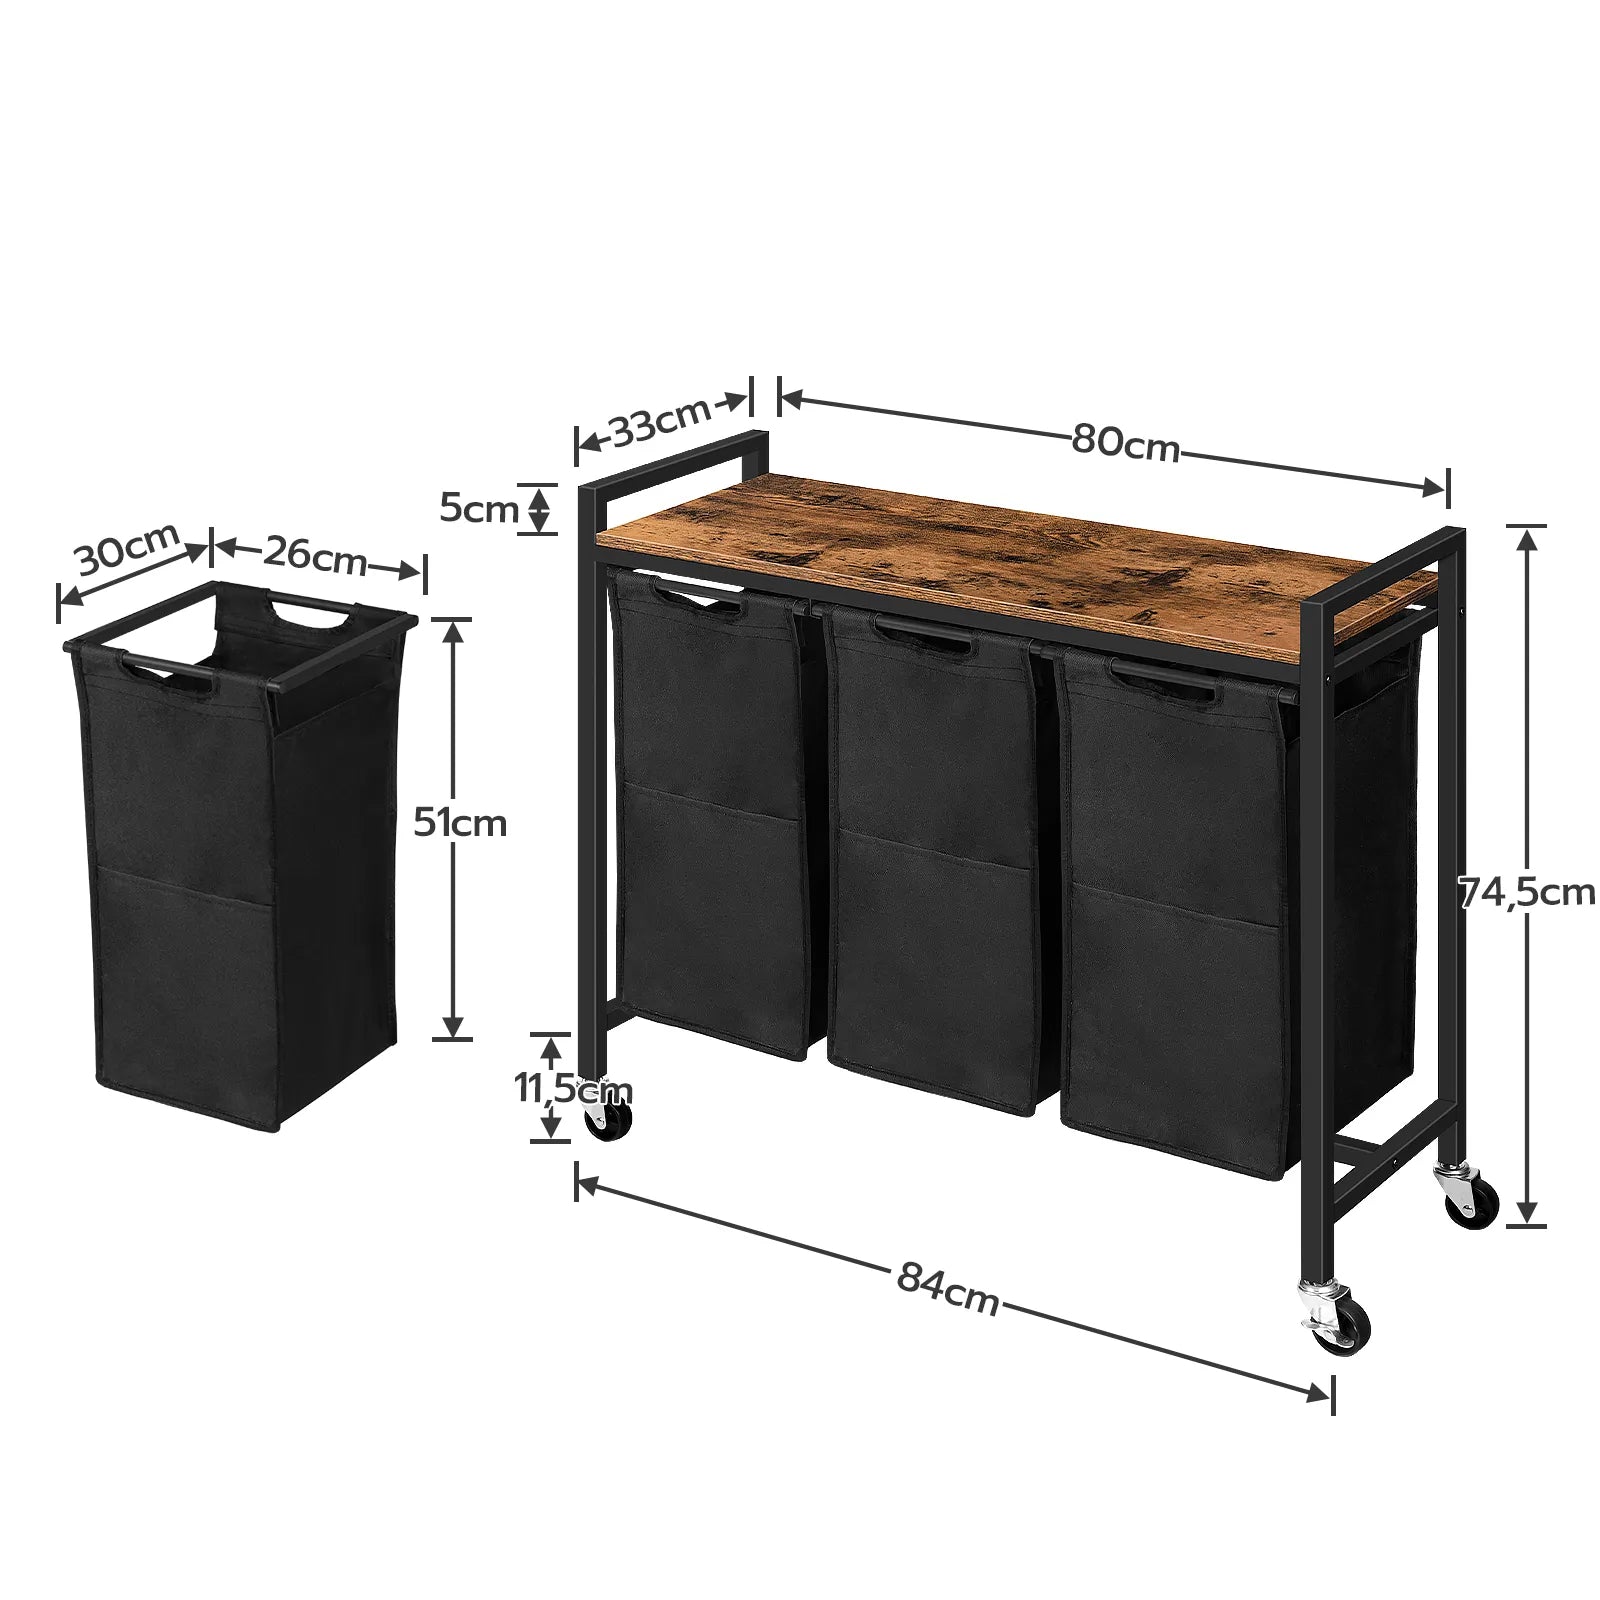 Wäschebox mit 3 Fächern, Wäschekorb auf Rollen mit Ablage, Oxford-Stoff Wäschetrolley in Rustikalem Braun - Unique Outlet